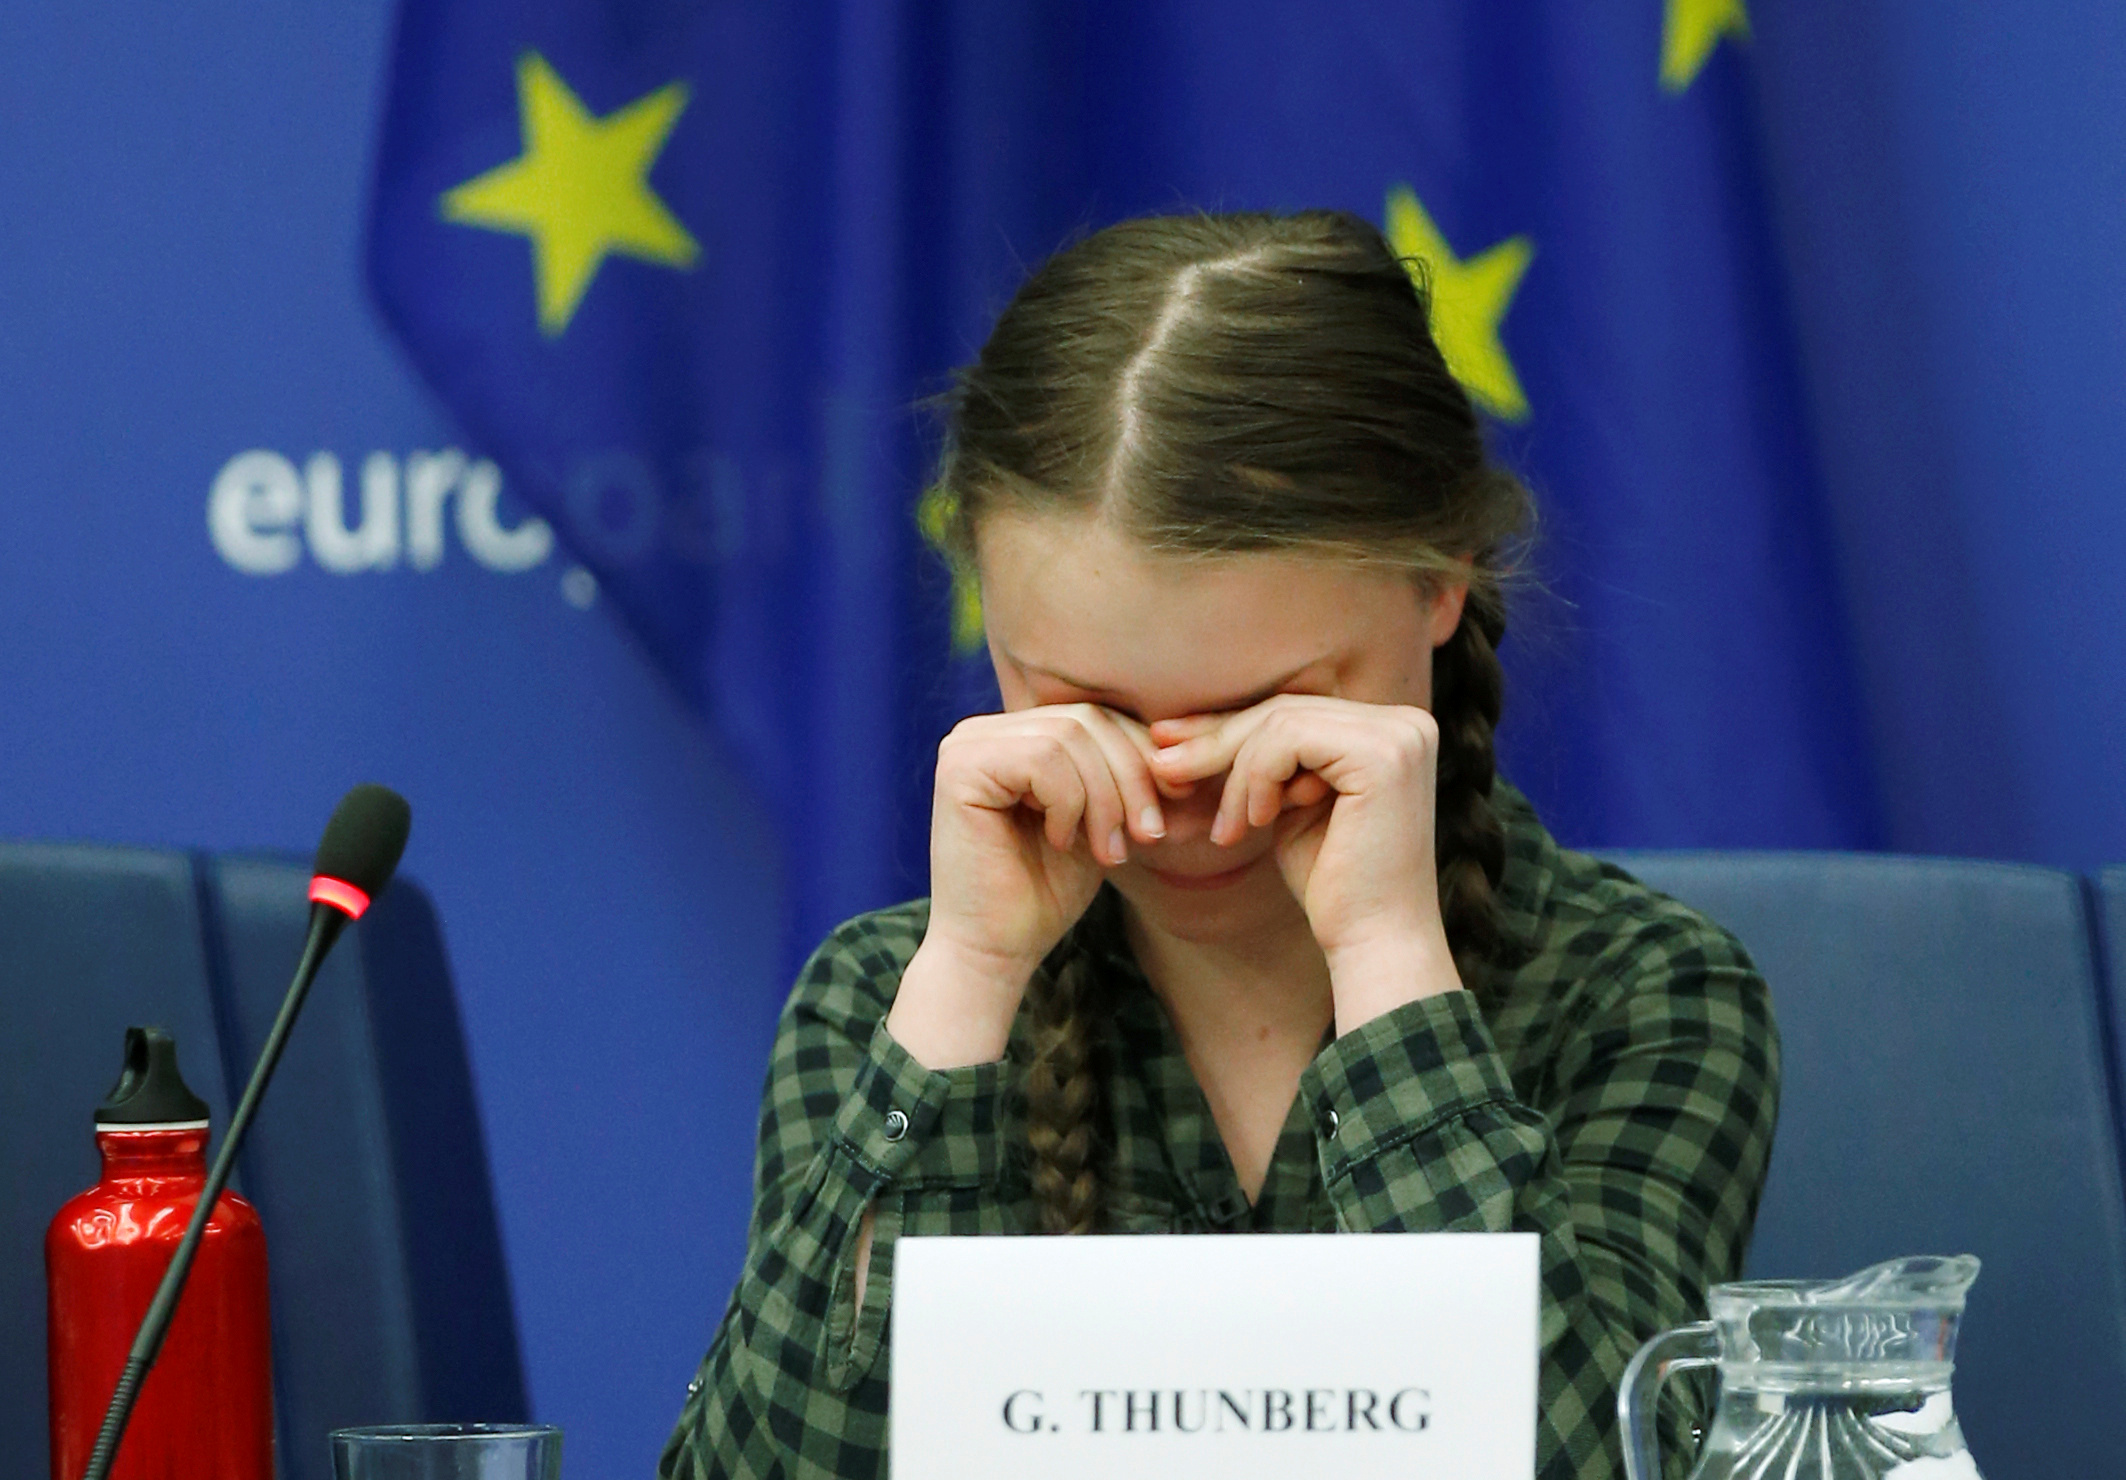 الطفلة السويدية جريتا ثانبيرج داخل البرلمان الأوروبى (9)